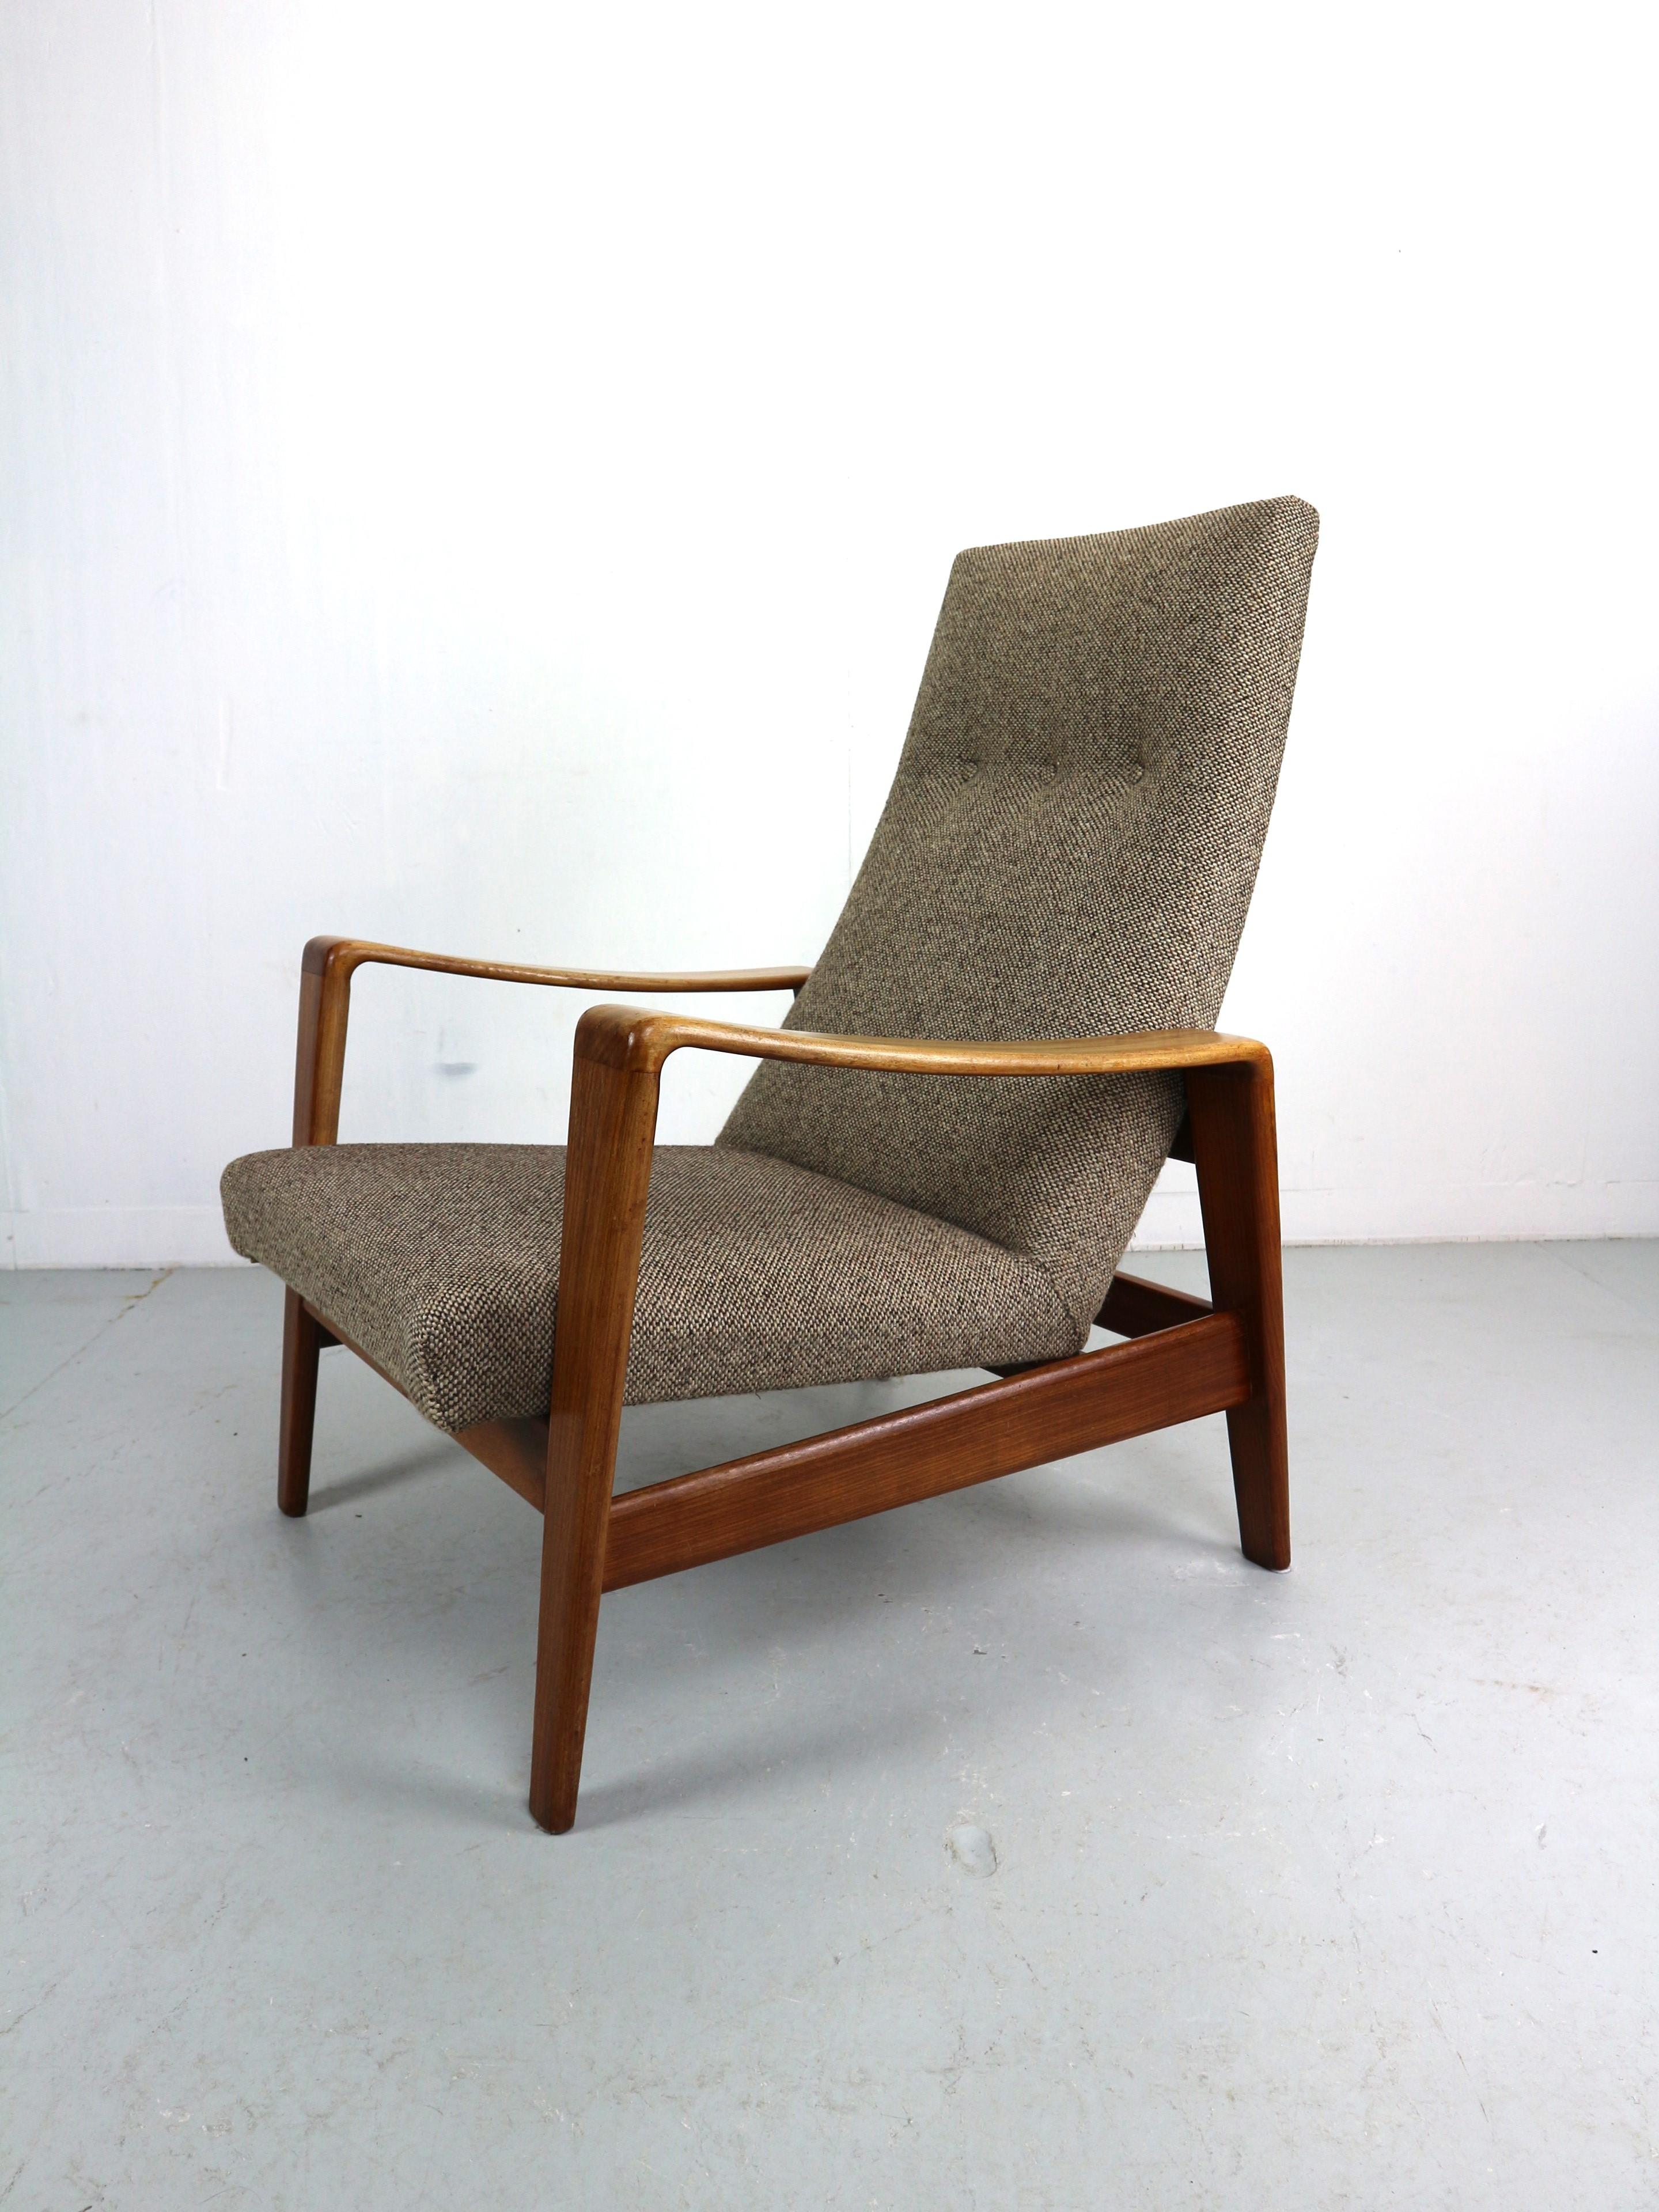 Fauteuil facile conçu par Arne Wahl Iversen, fabriqué par Komfort Danemark 1960. Ces chaises sont dotées d'un solide cadre en bois de teck et d'un rembourrage d'origine en brun clair. Ces chaises aux formes organiques et dynamiques s'intègrent